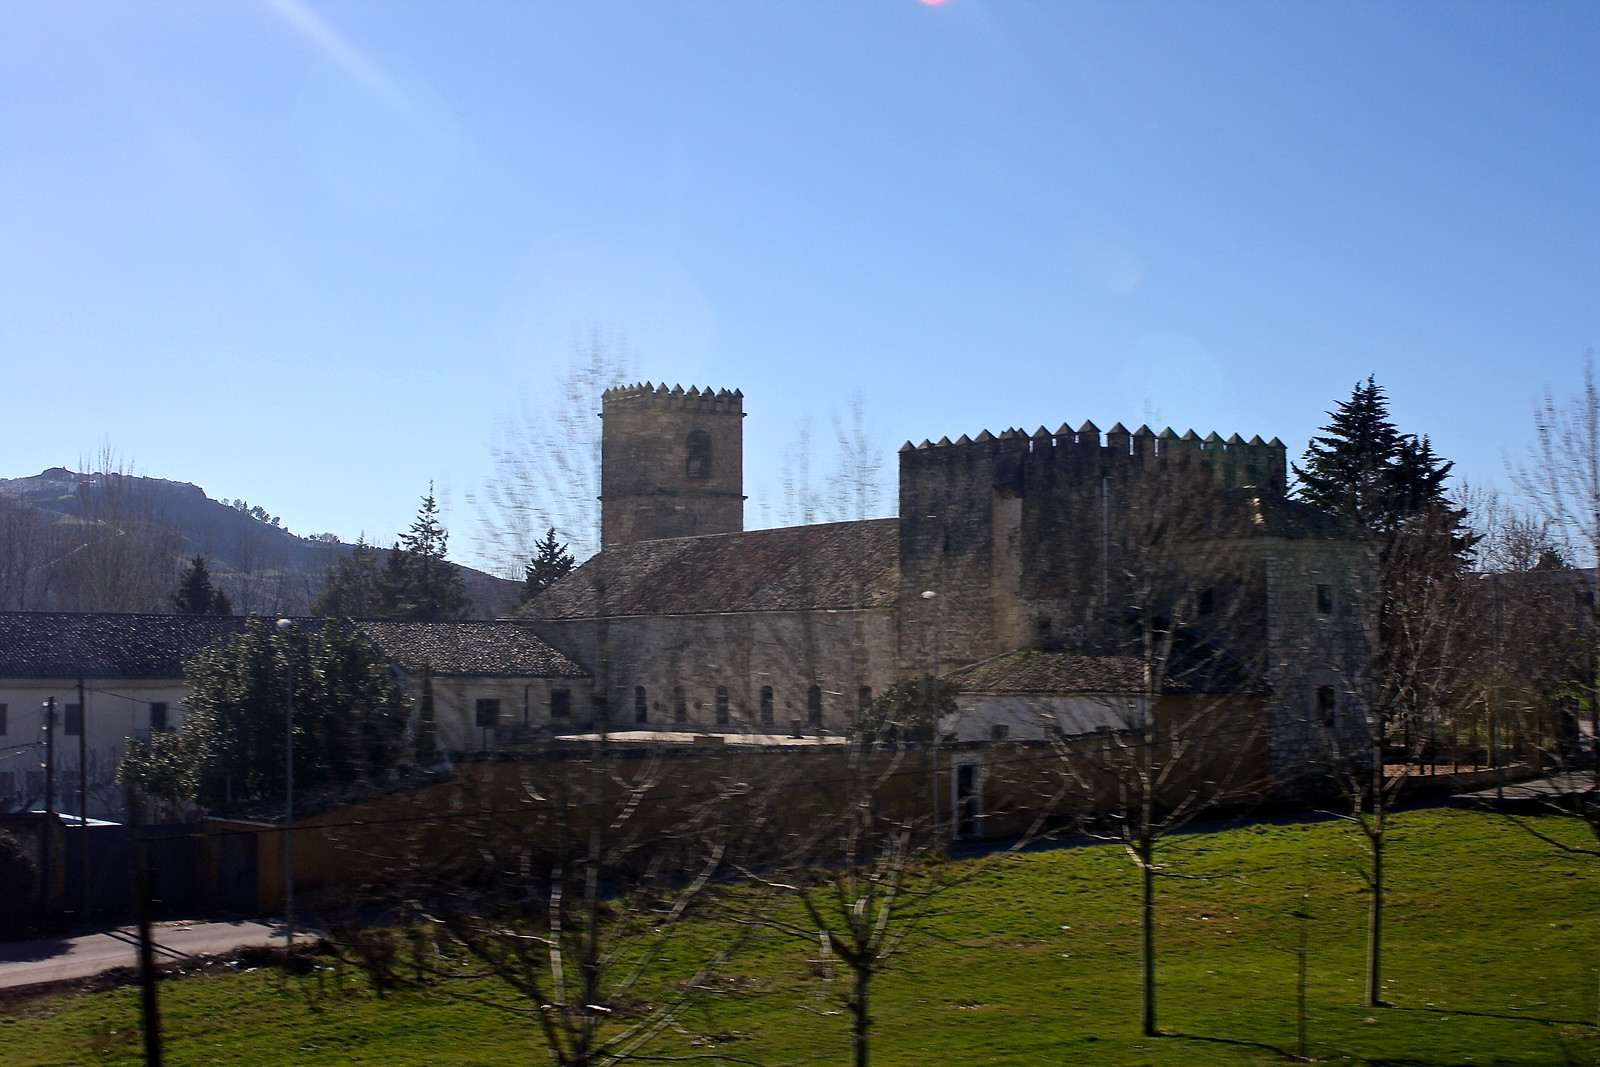 Villanueva del Arzobispo, Spain